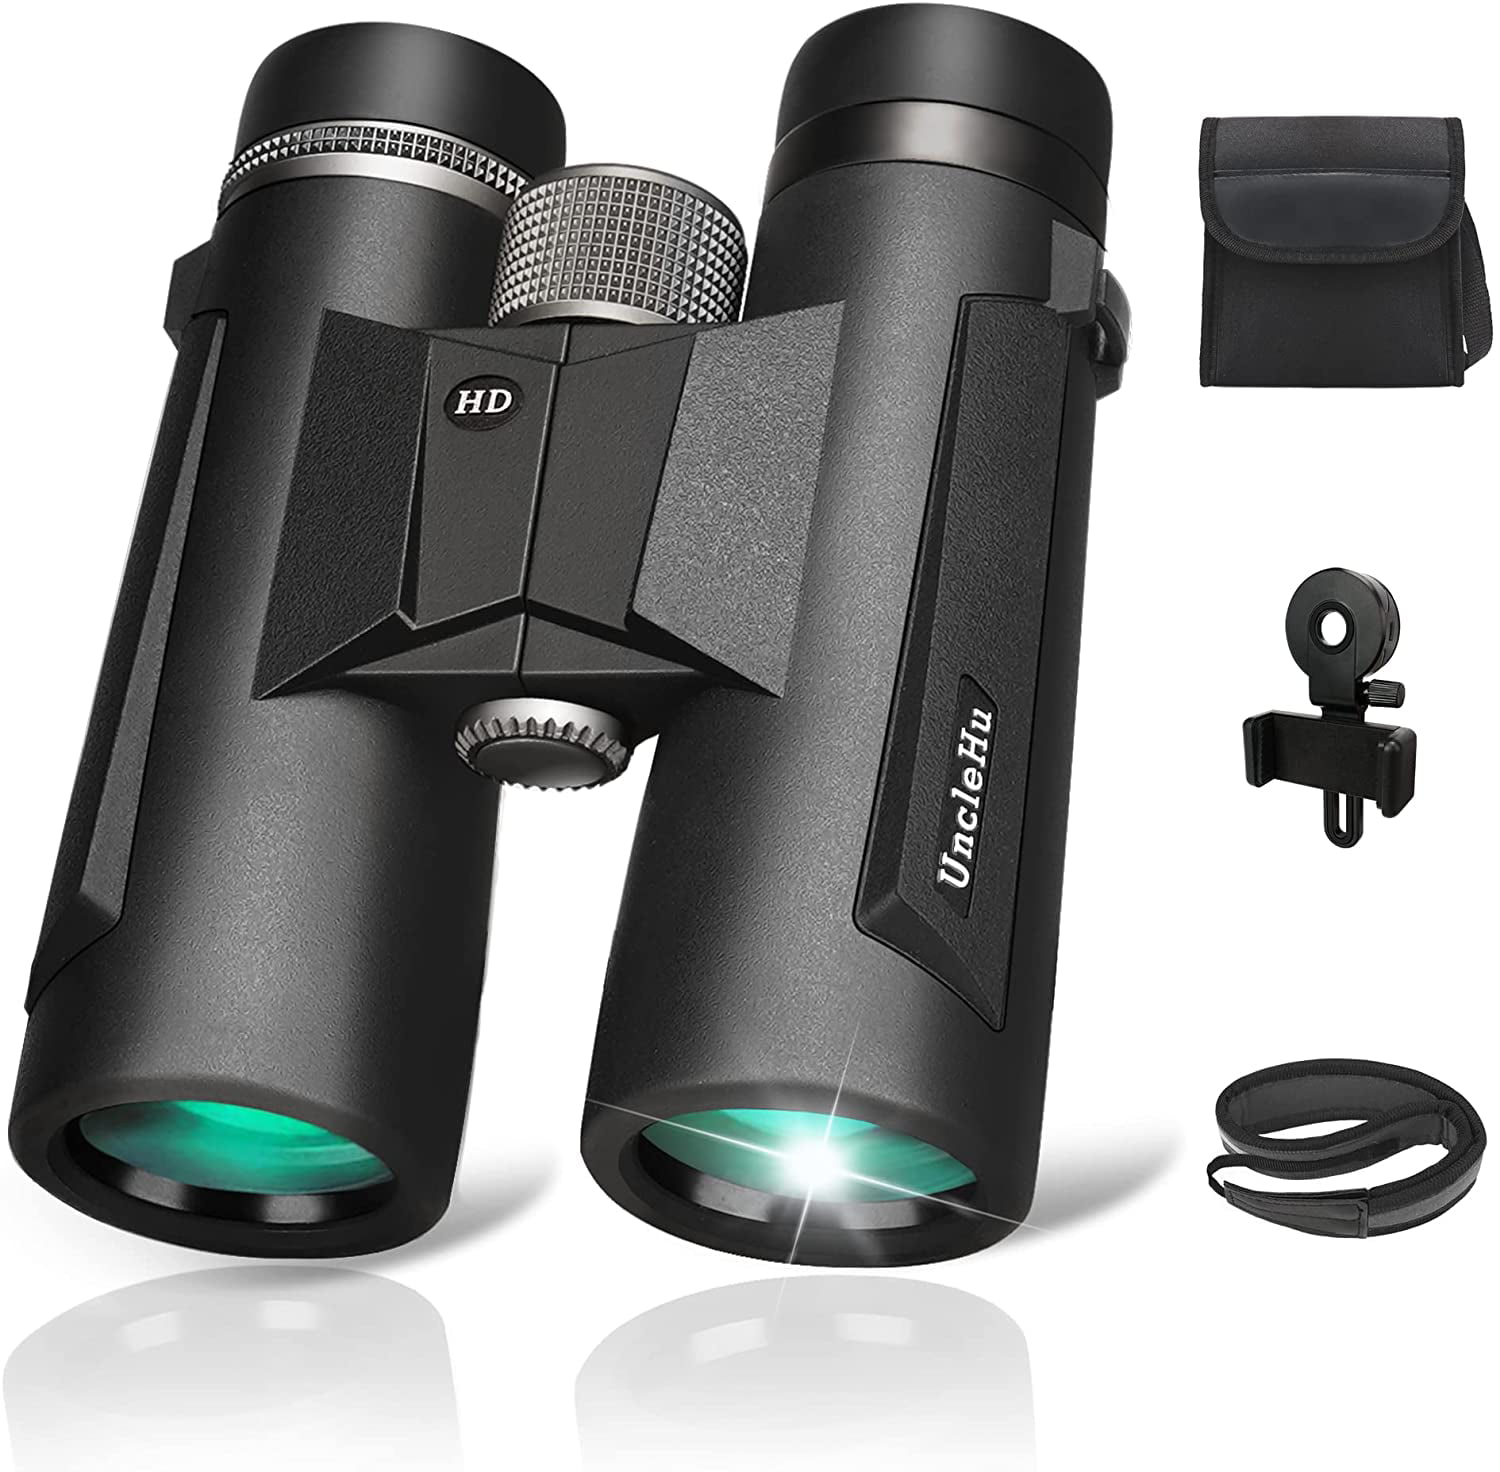 Outdoor Binoculars 10x42mm Roof Prism Waterproof Fogproof Compact Field Glasses 